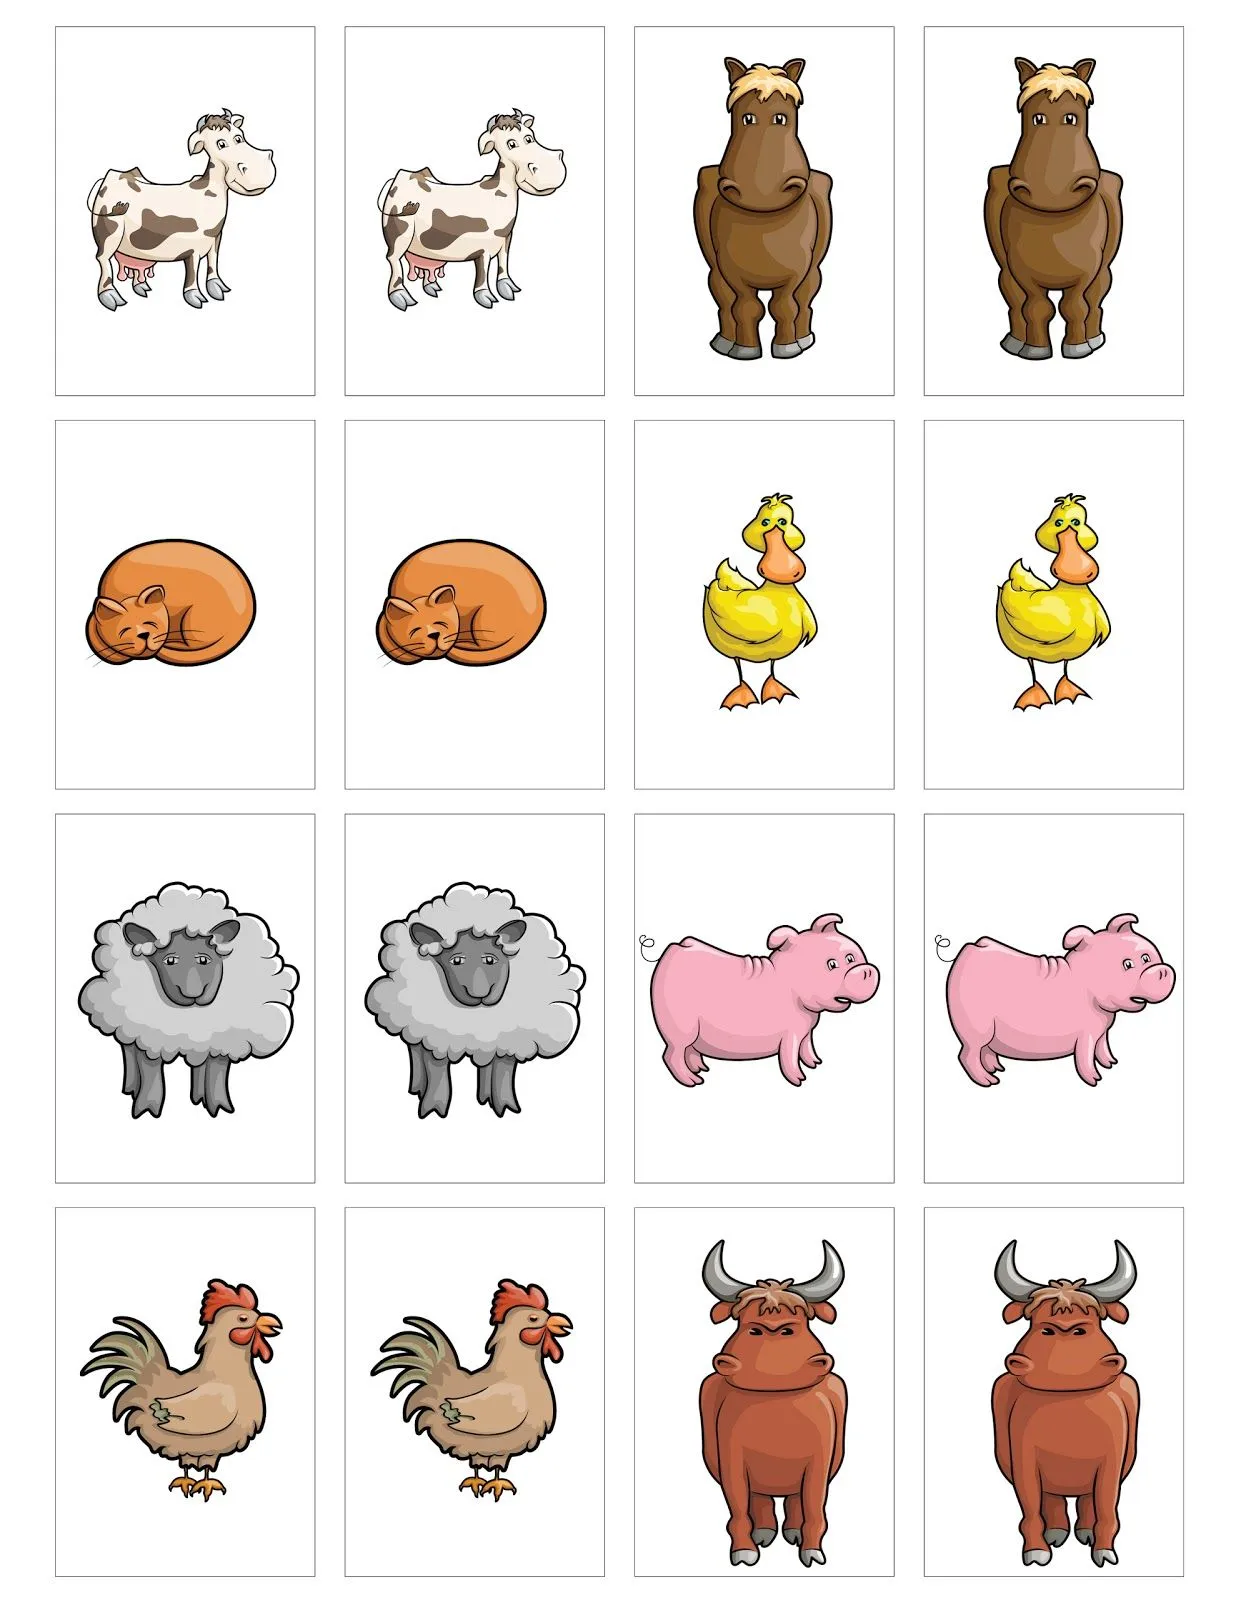  divertido juego de memoria con lindos animales de granja. Da clic en ...